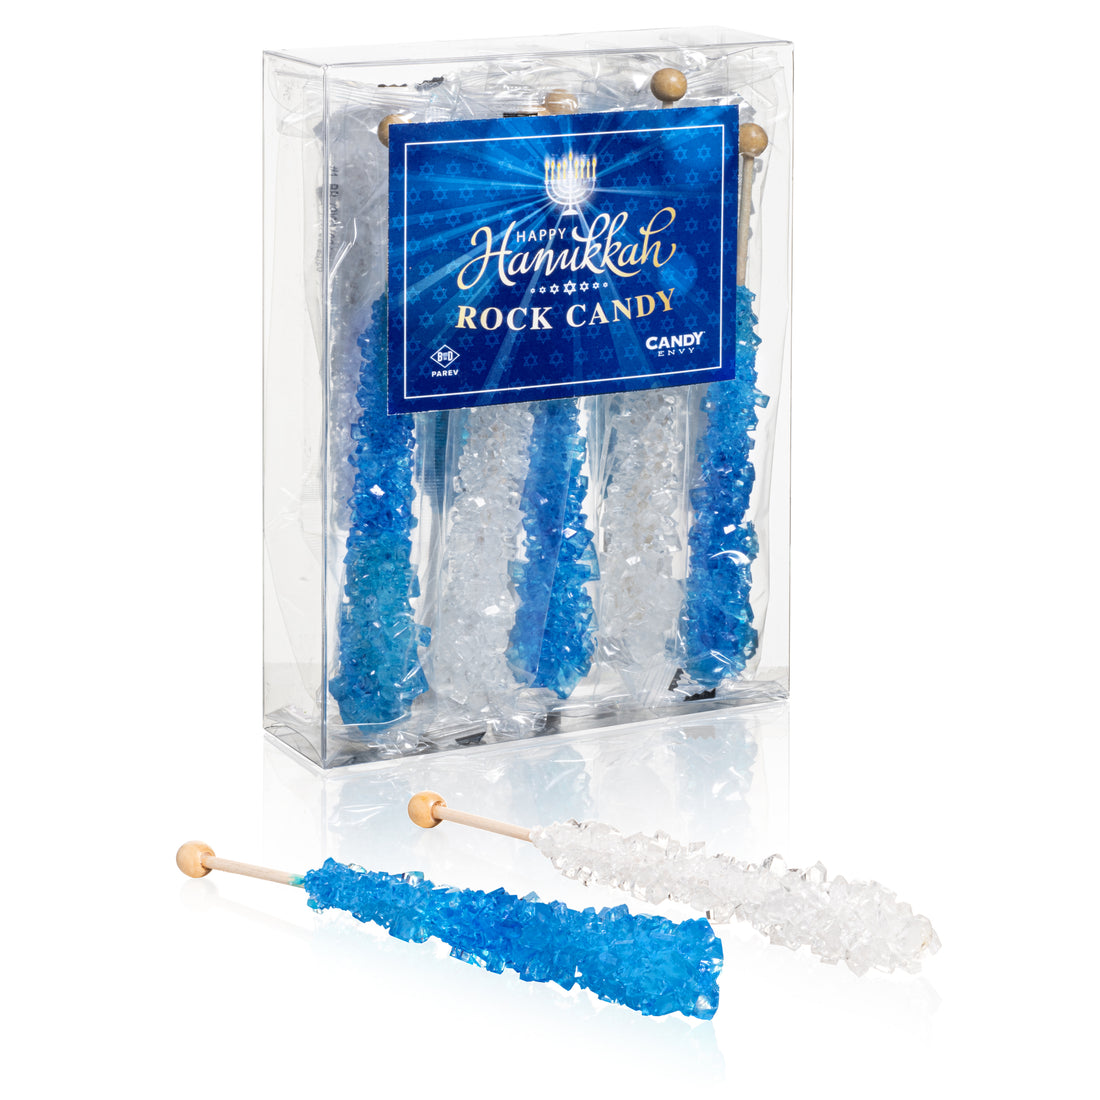 Hannukah Rock Candy Crystal Sticks